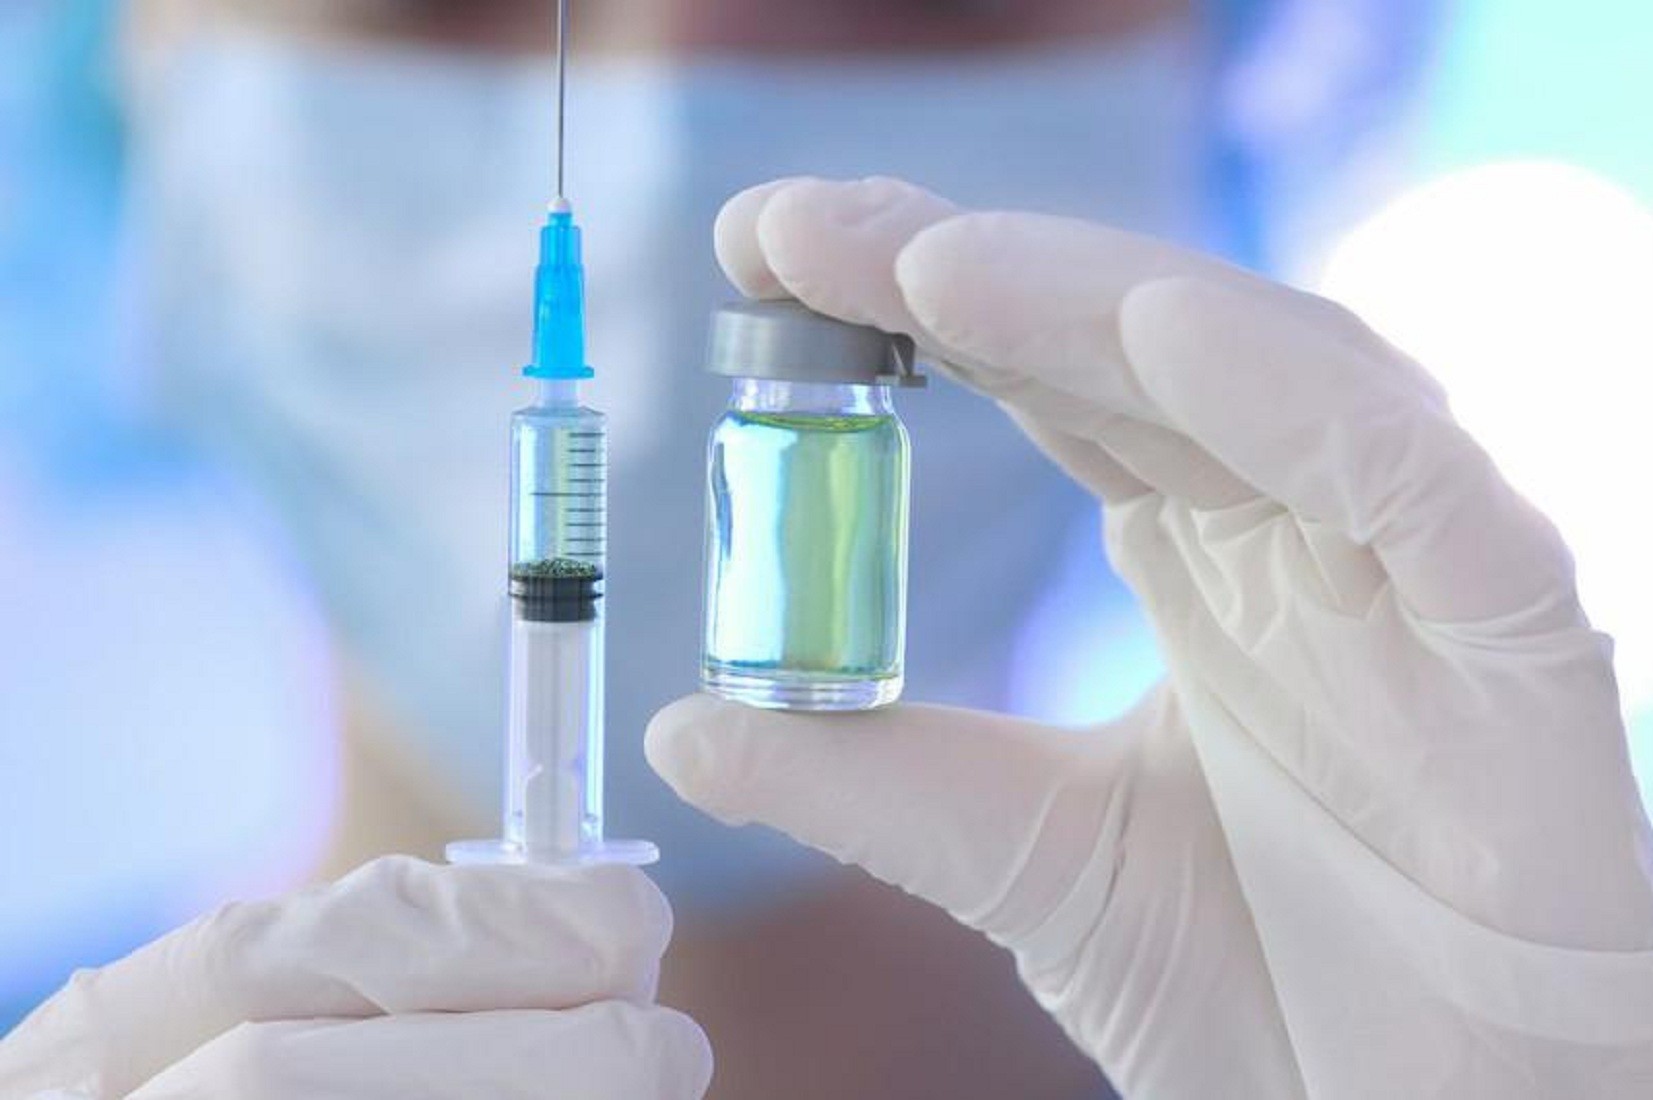 75% врачей порекомендуют российскую вакцину от коронавируса после клинических испытаний